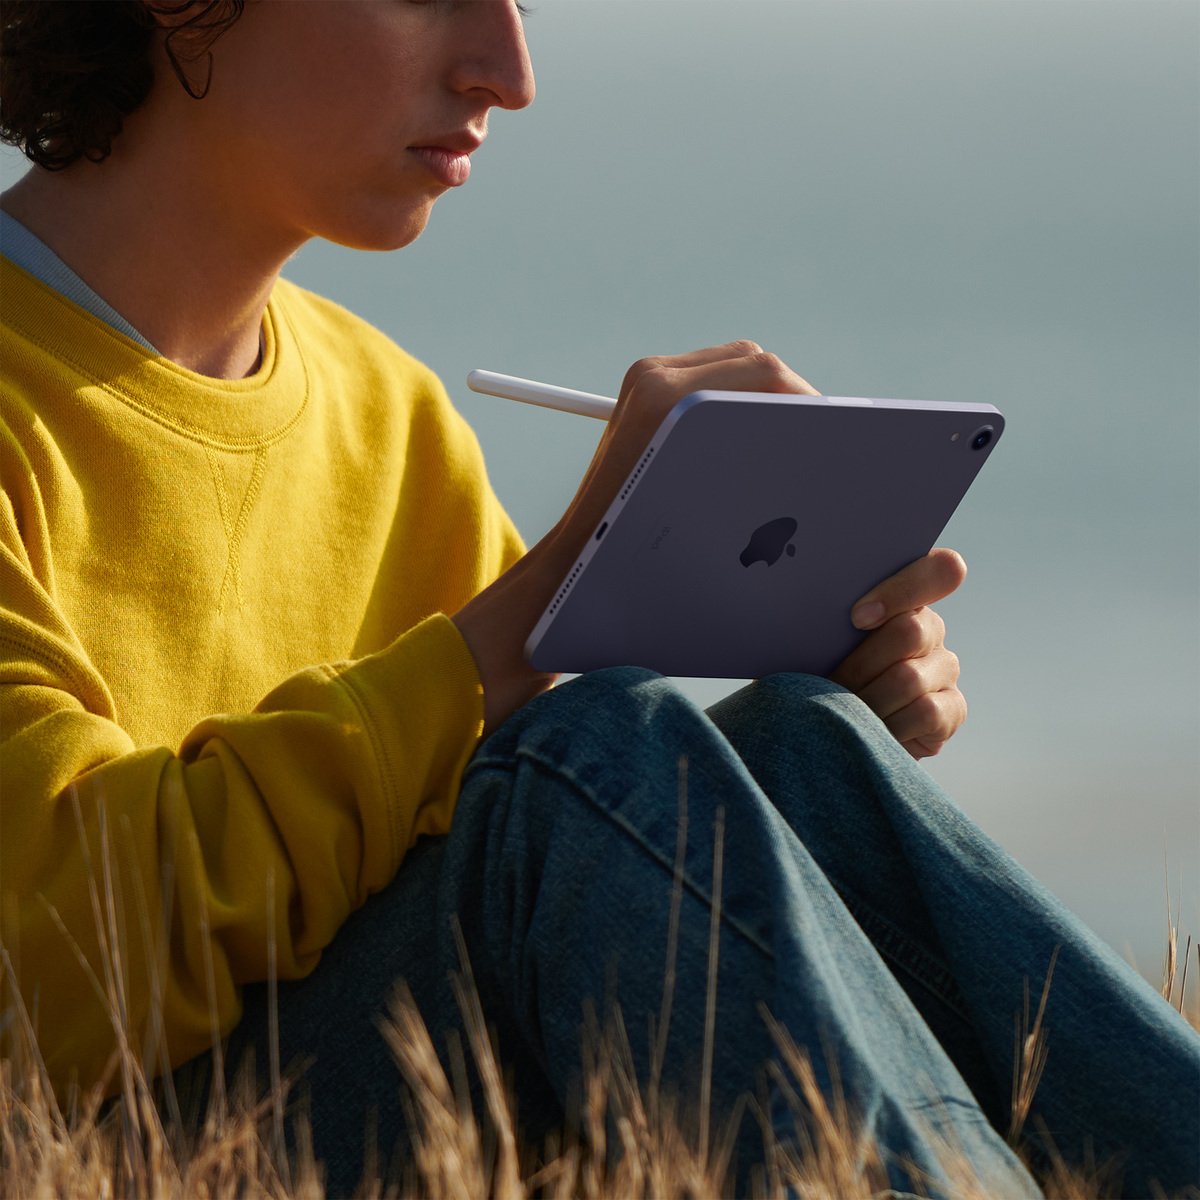 Apple iPad mini 2021 (6th Generation) 8.3-inch, Wi-Fi, 256GB - Purple